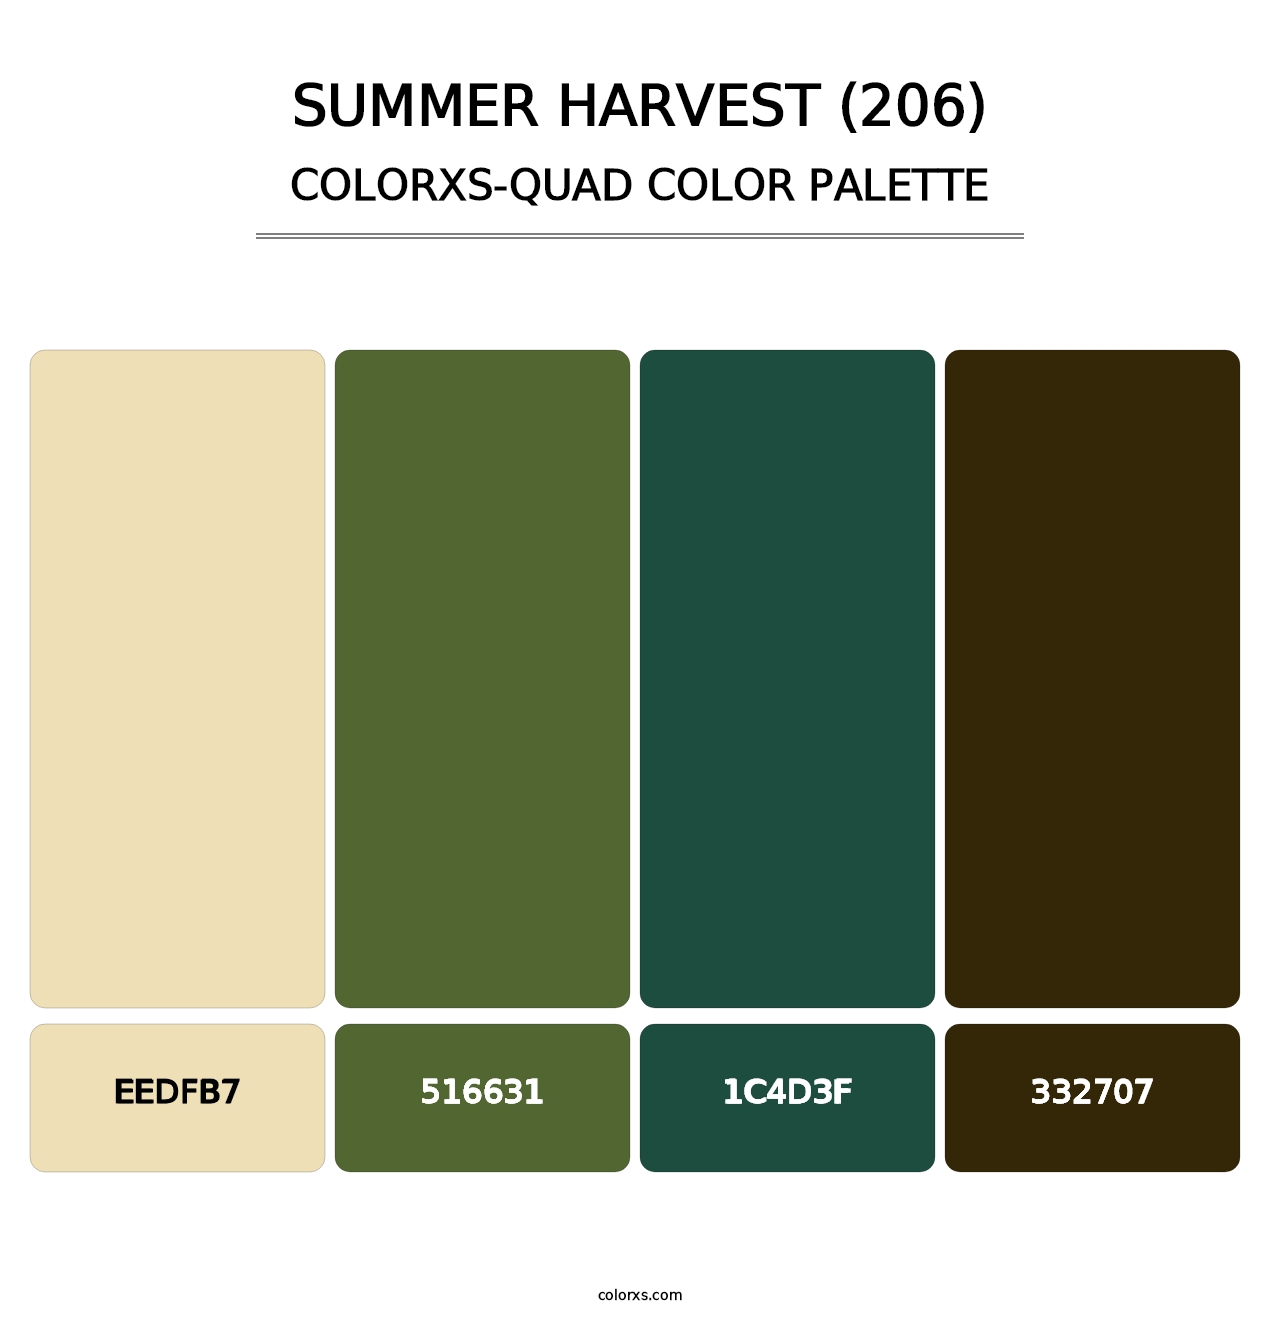 Summer Harvest (206) - Colorxs Quad Palette